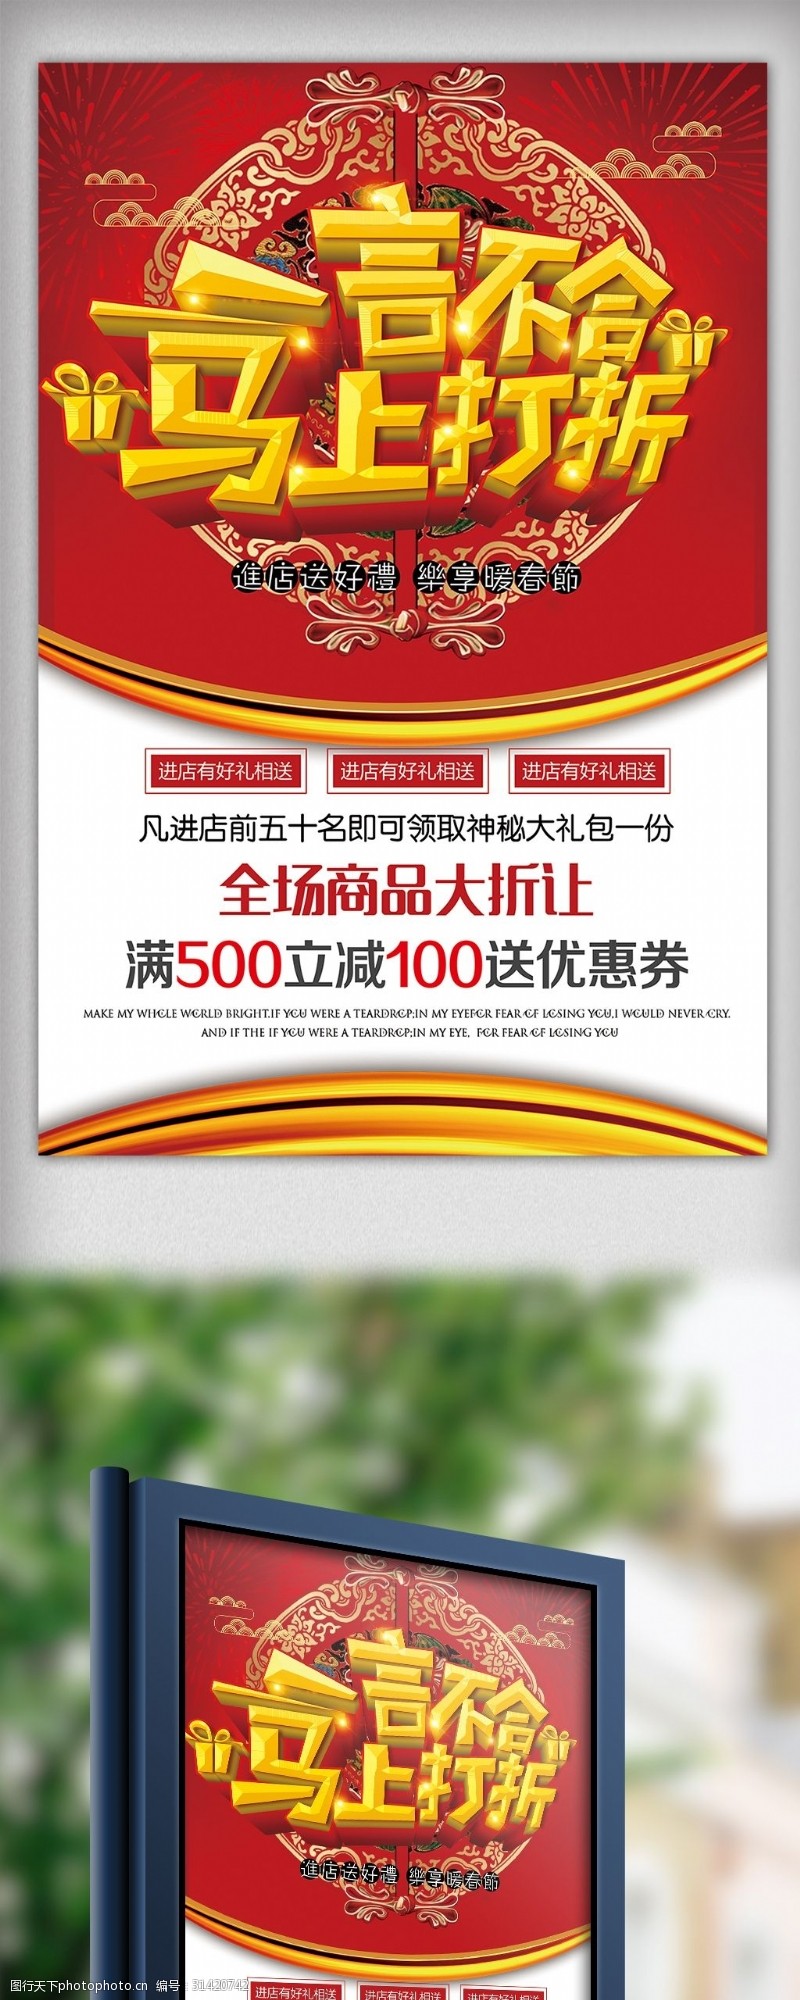 年末节日喜庆打折促销宣传海报模板下载